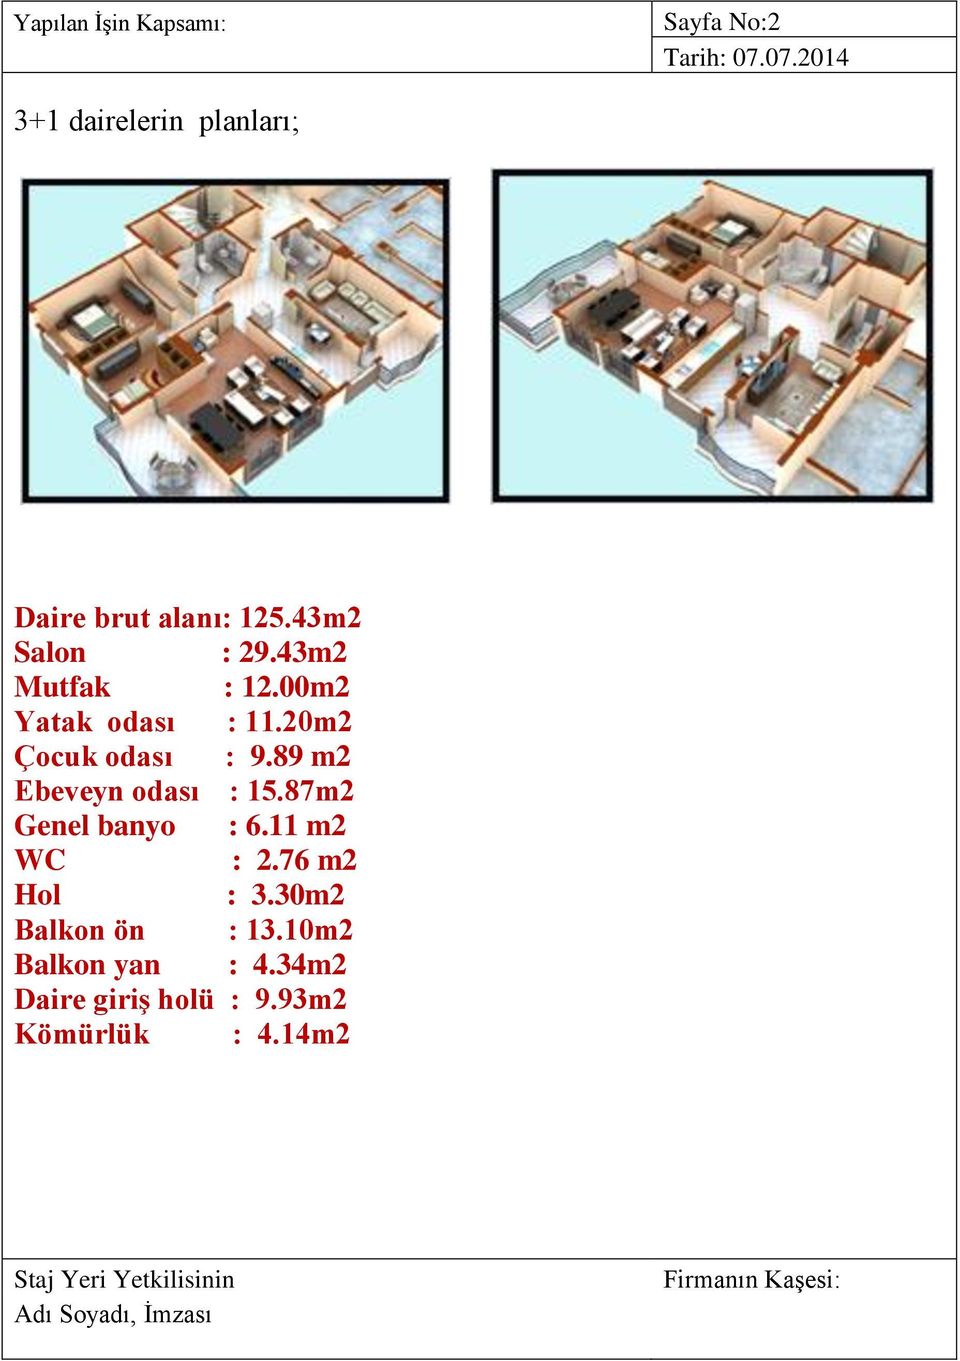 89 m2 Ebeveyn odası : 15.87m2 Genel banyo : 6.11 m2 WC : 2.76 m2 Hol : 3.